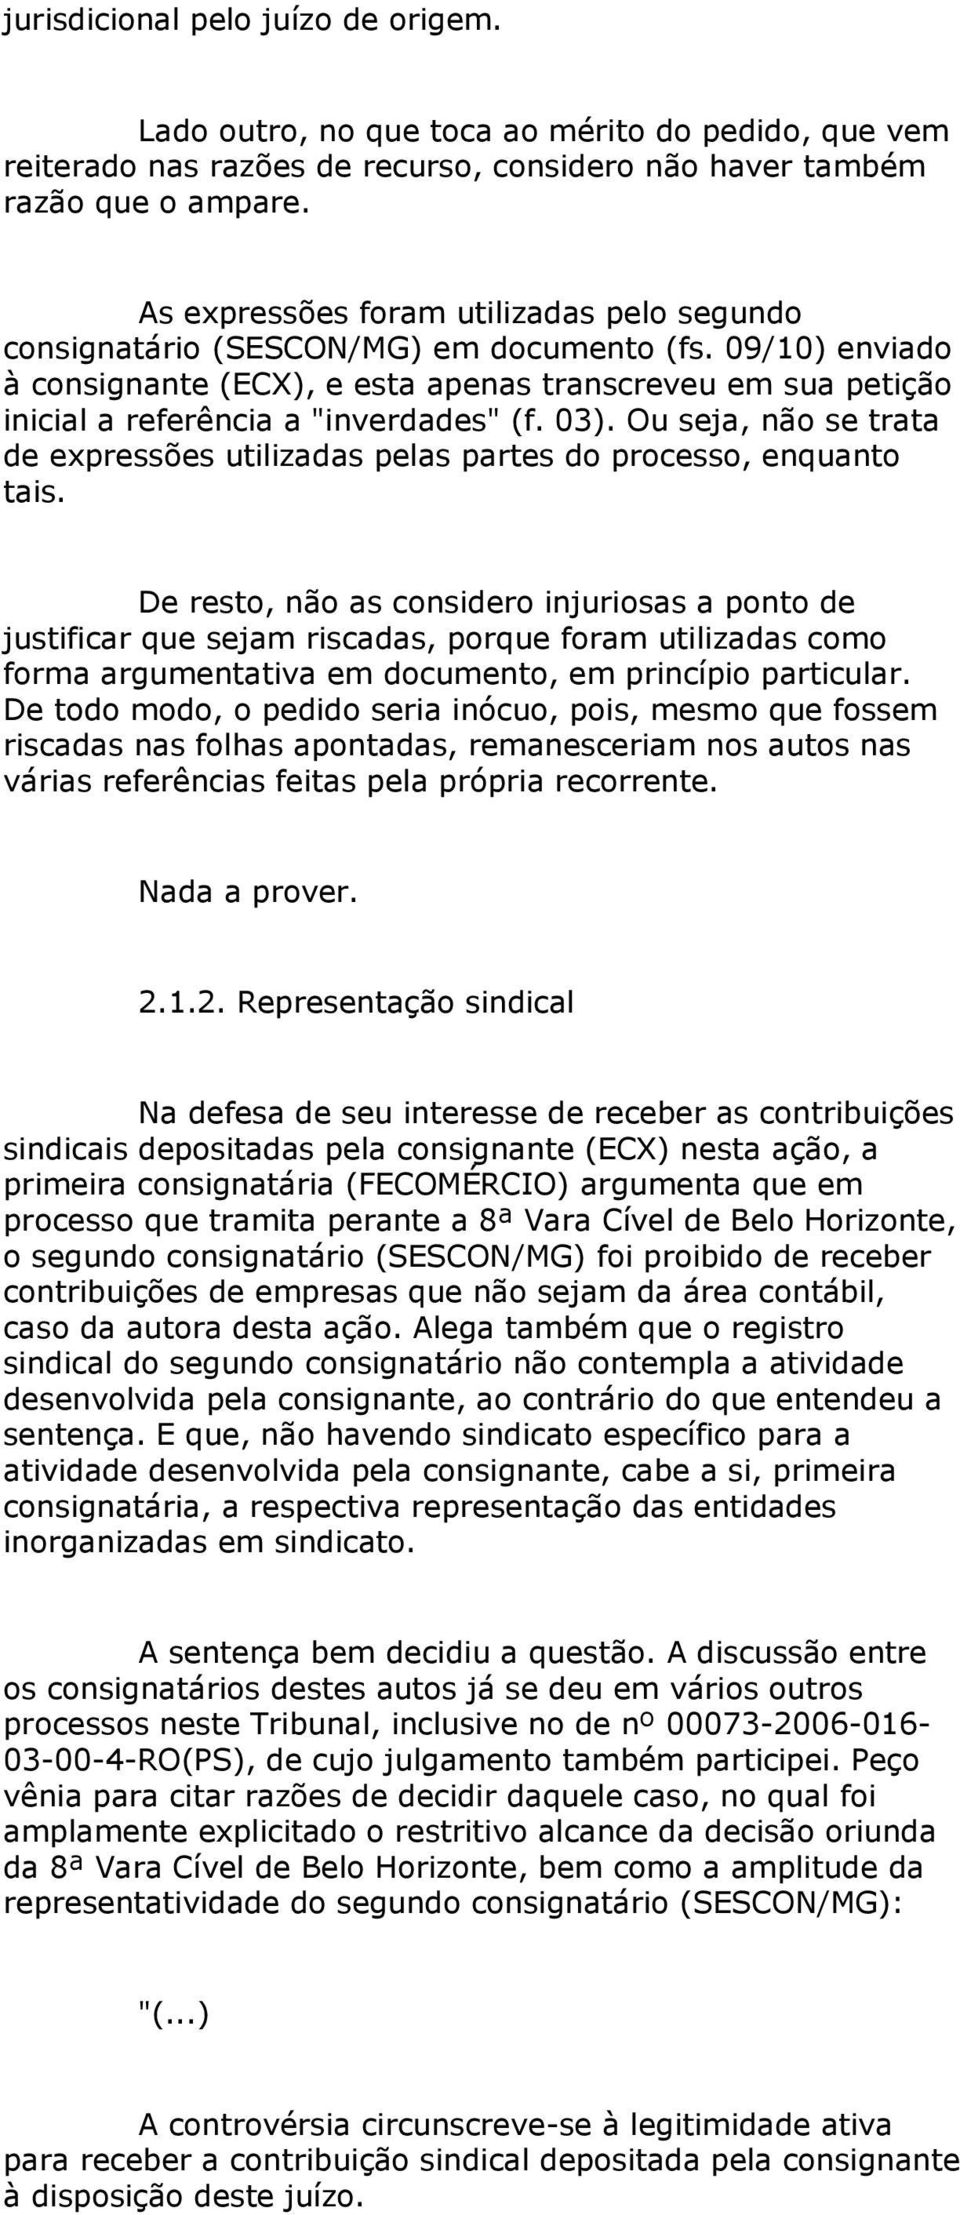 09/10) enviado à consignante (ECX), e esta apenas transcreveu em sua petição inicial a referência a "inverdades" (f. 03).